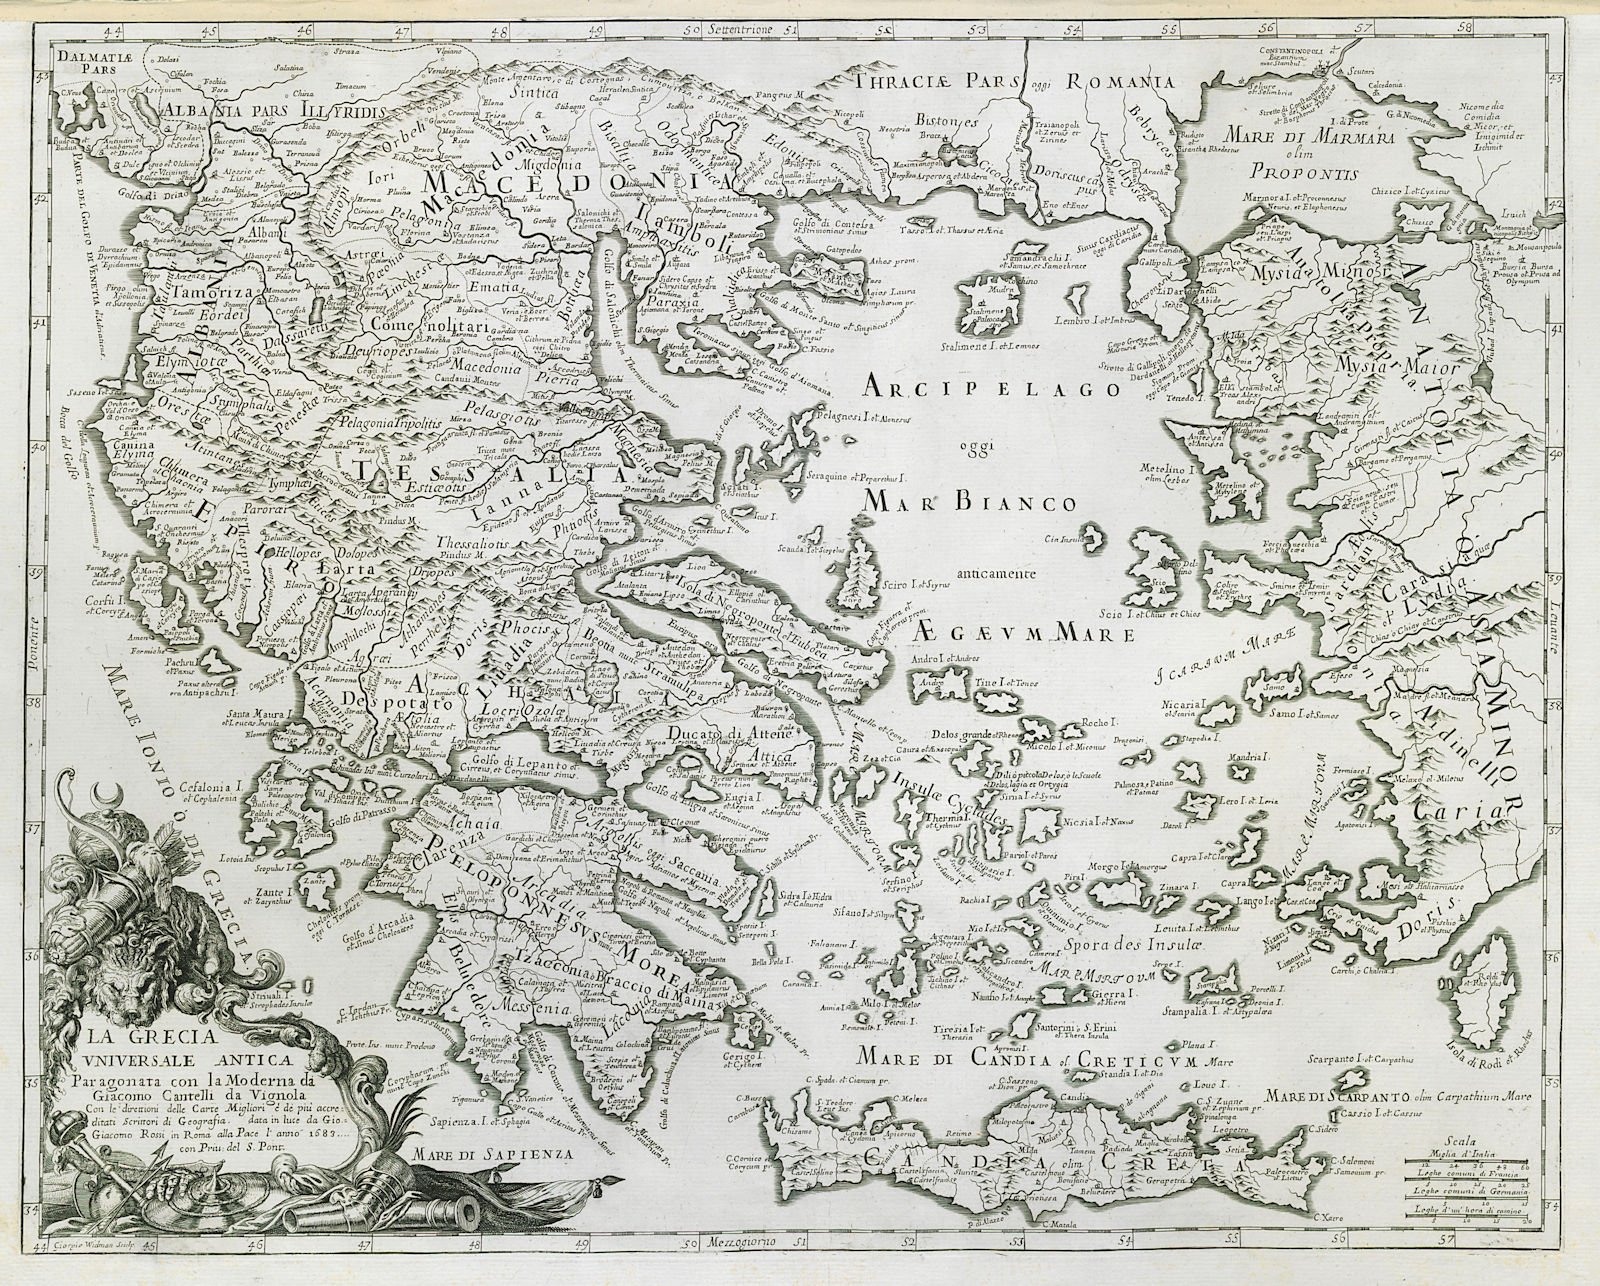 Associate Product La Grecia Universale Antica. Ancient Greece & Aegean. ROSSI / CANTELLI 1683 map